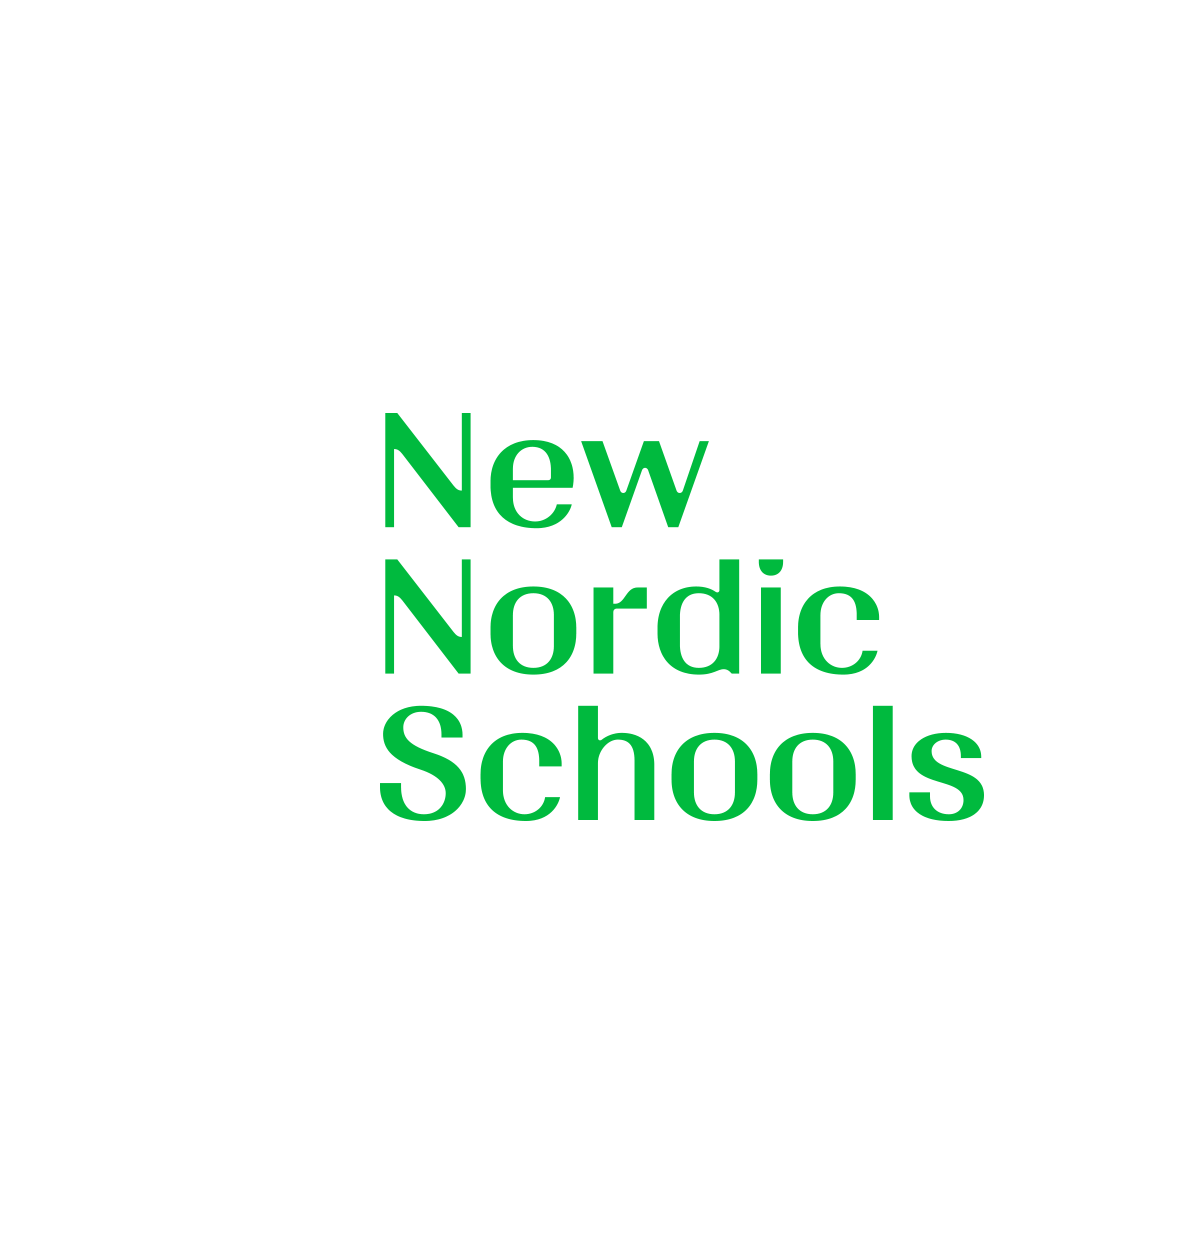 Nordic school + Finland education